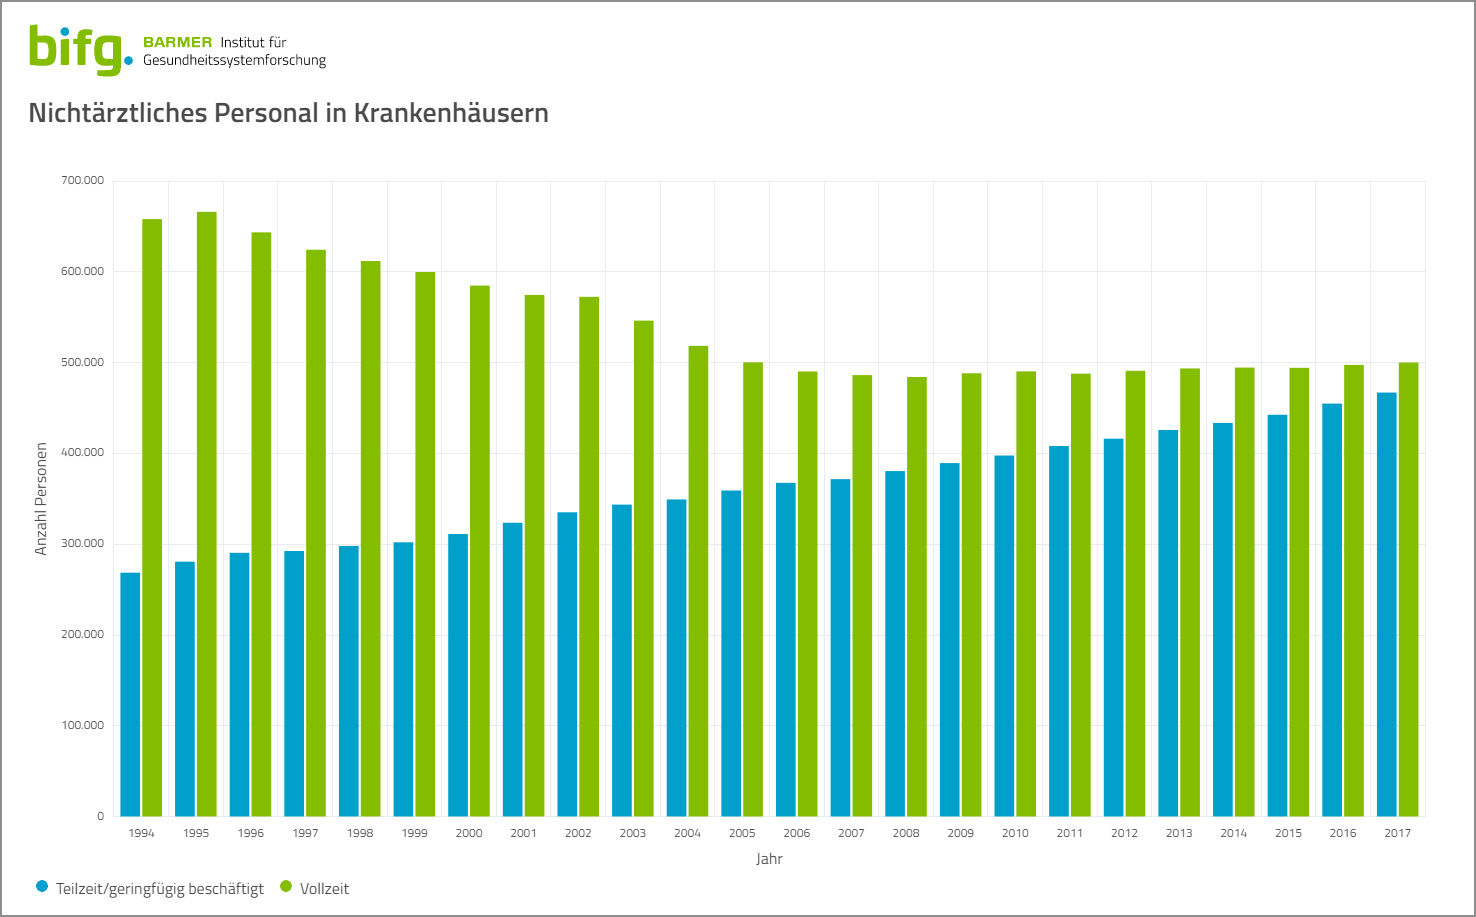 Grafik über die Entwicklung von Voll- und Teilzeitbeschäftigungen des nichtärztlichen Personals in Krankenhäusern 1994-2017